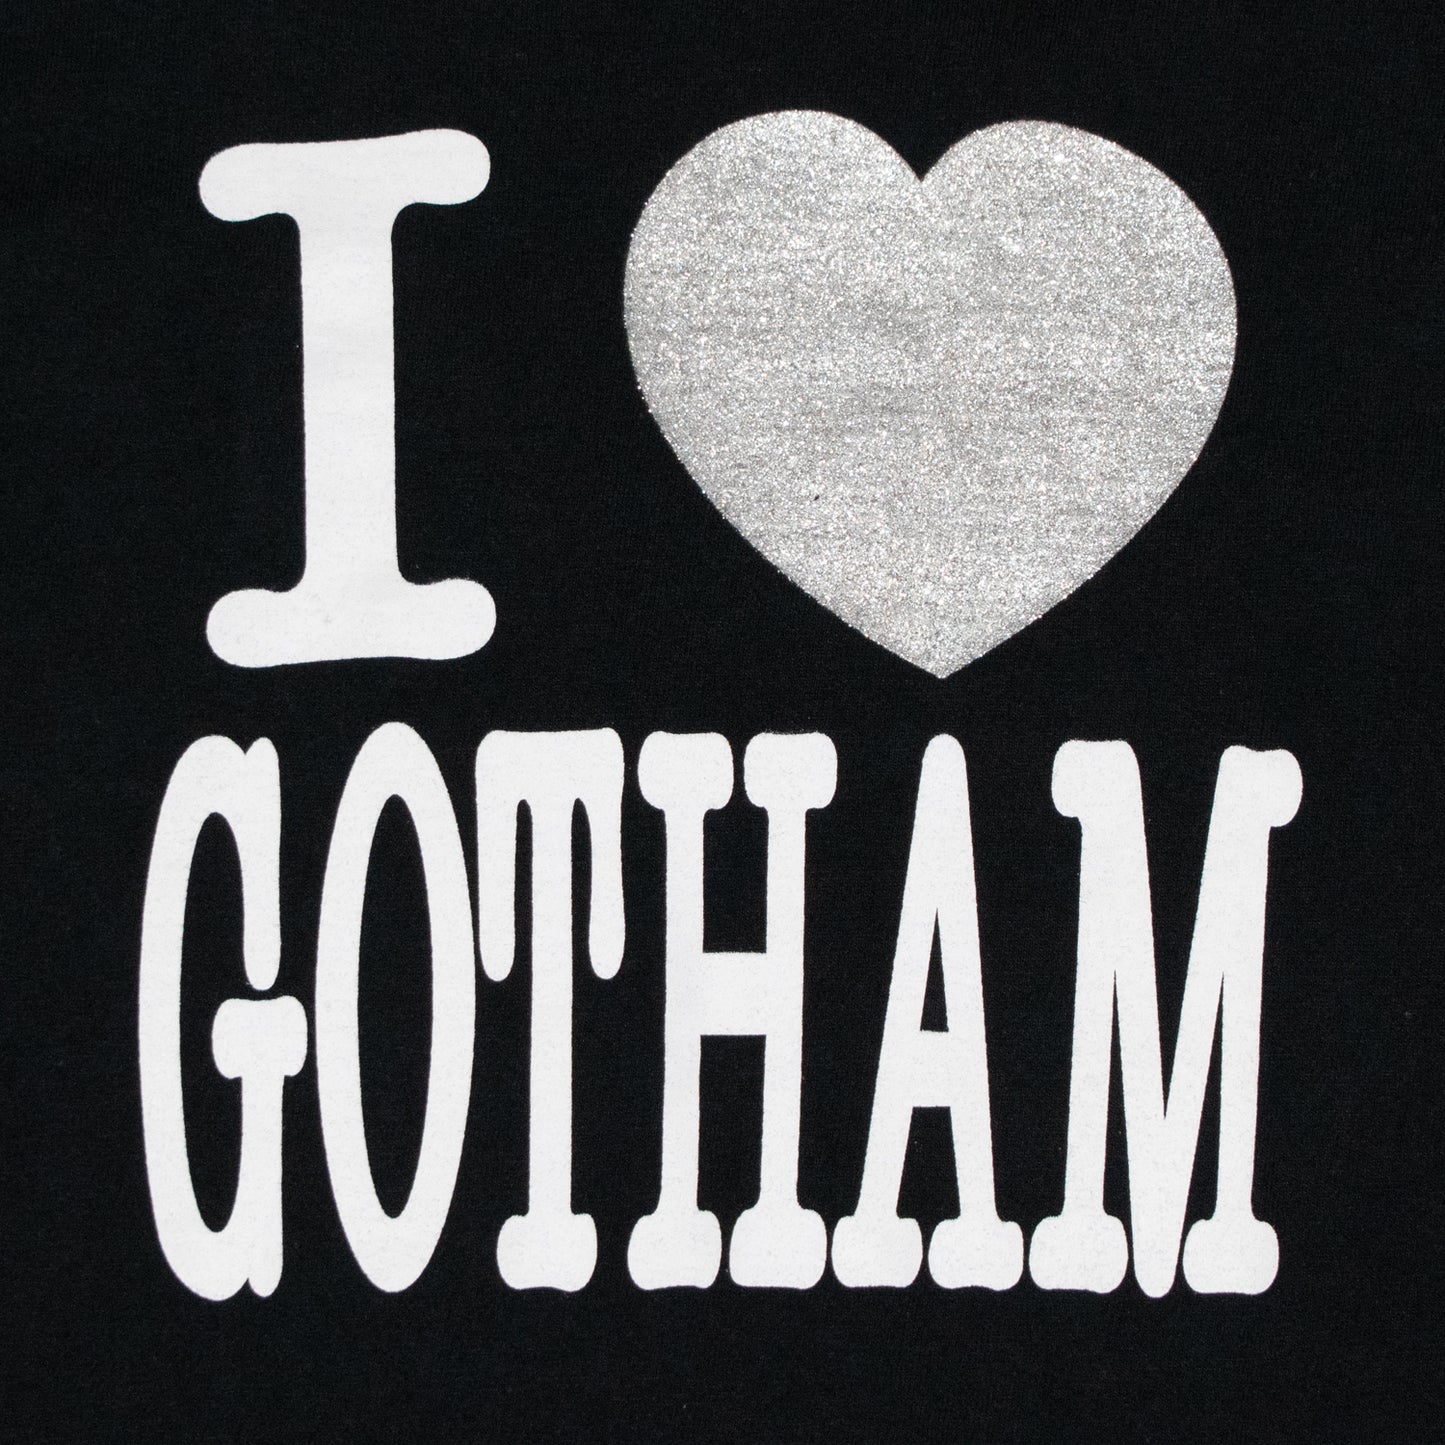 Number (N)ine I Love Gotham Tee – SS02